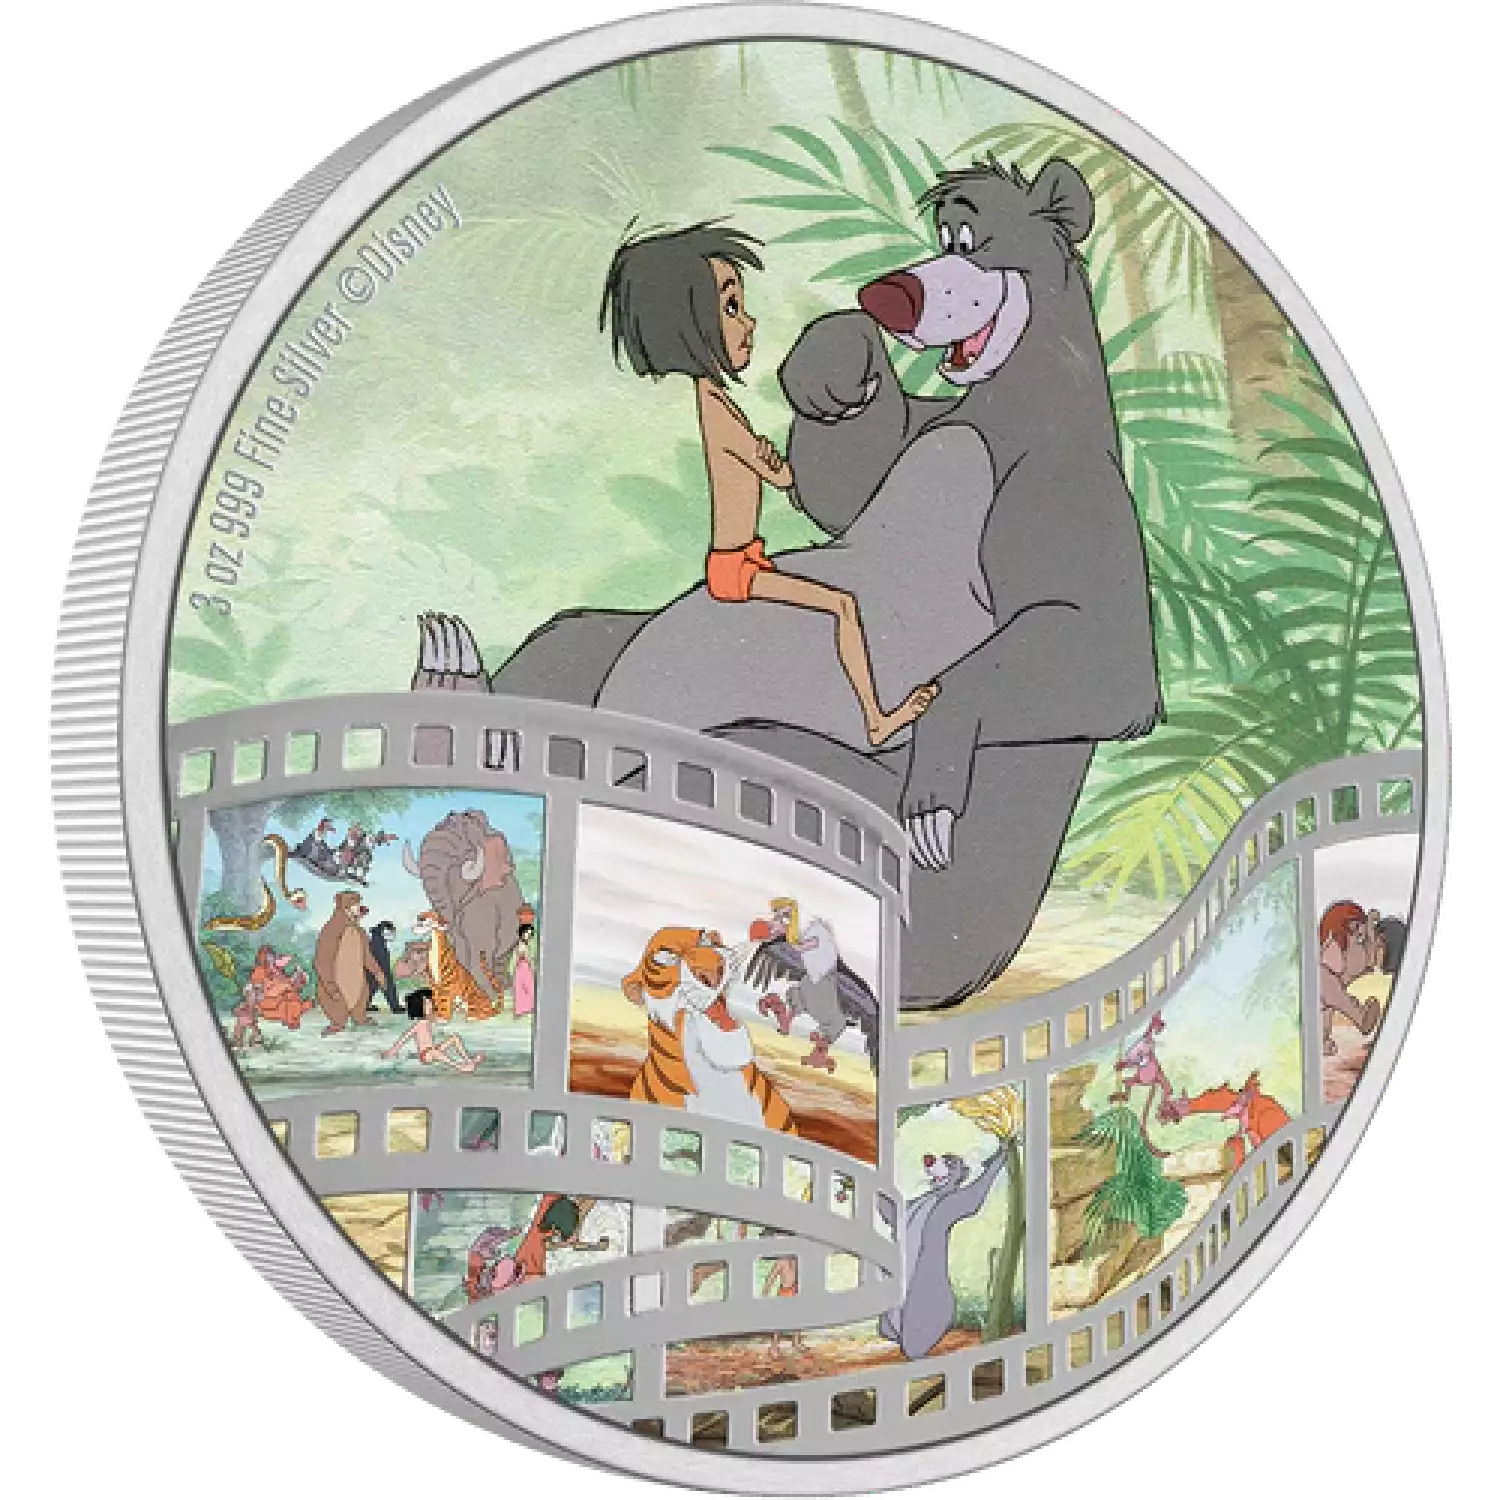 Disney Cinema masterpieces- 2022 3oz Jungle Book Silver Coin (3)